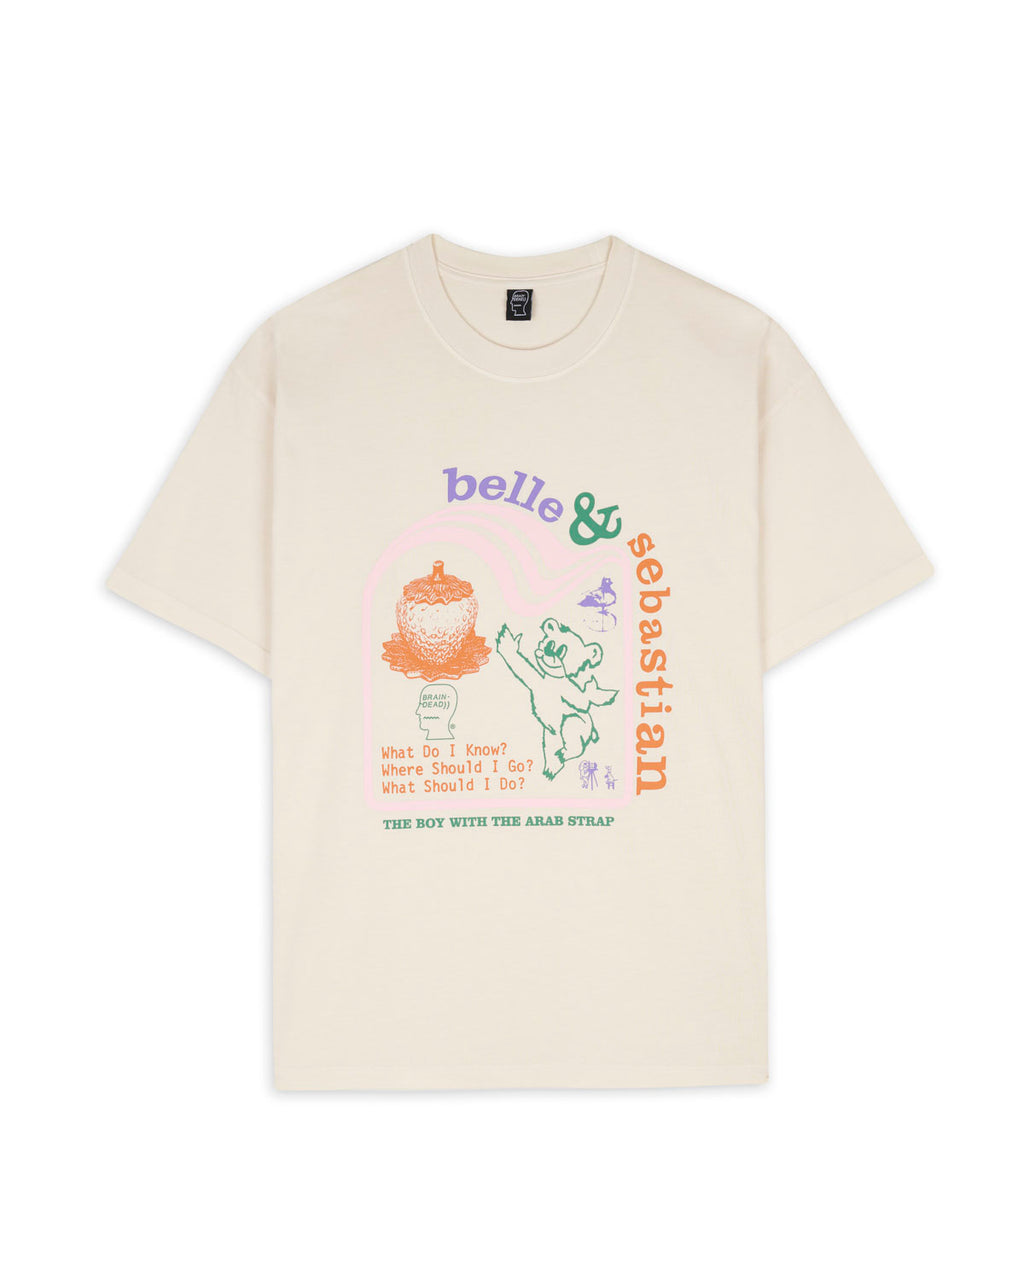 Brain Dead x Belle & Sebastian Boy With The Arab Strap T-Shirt - Natural